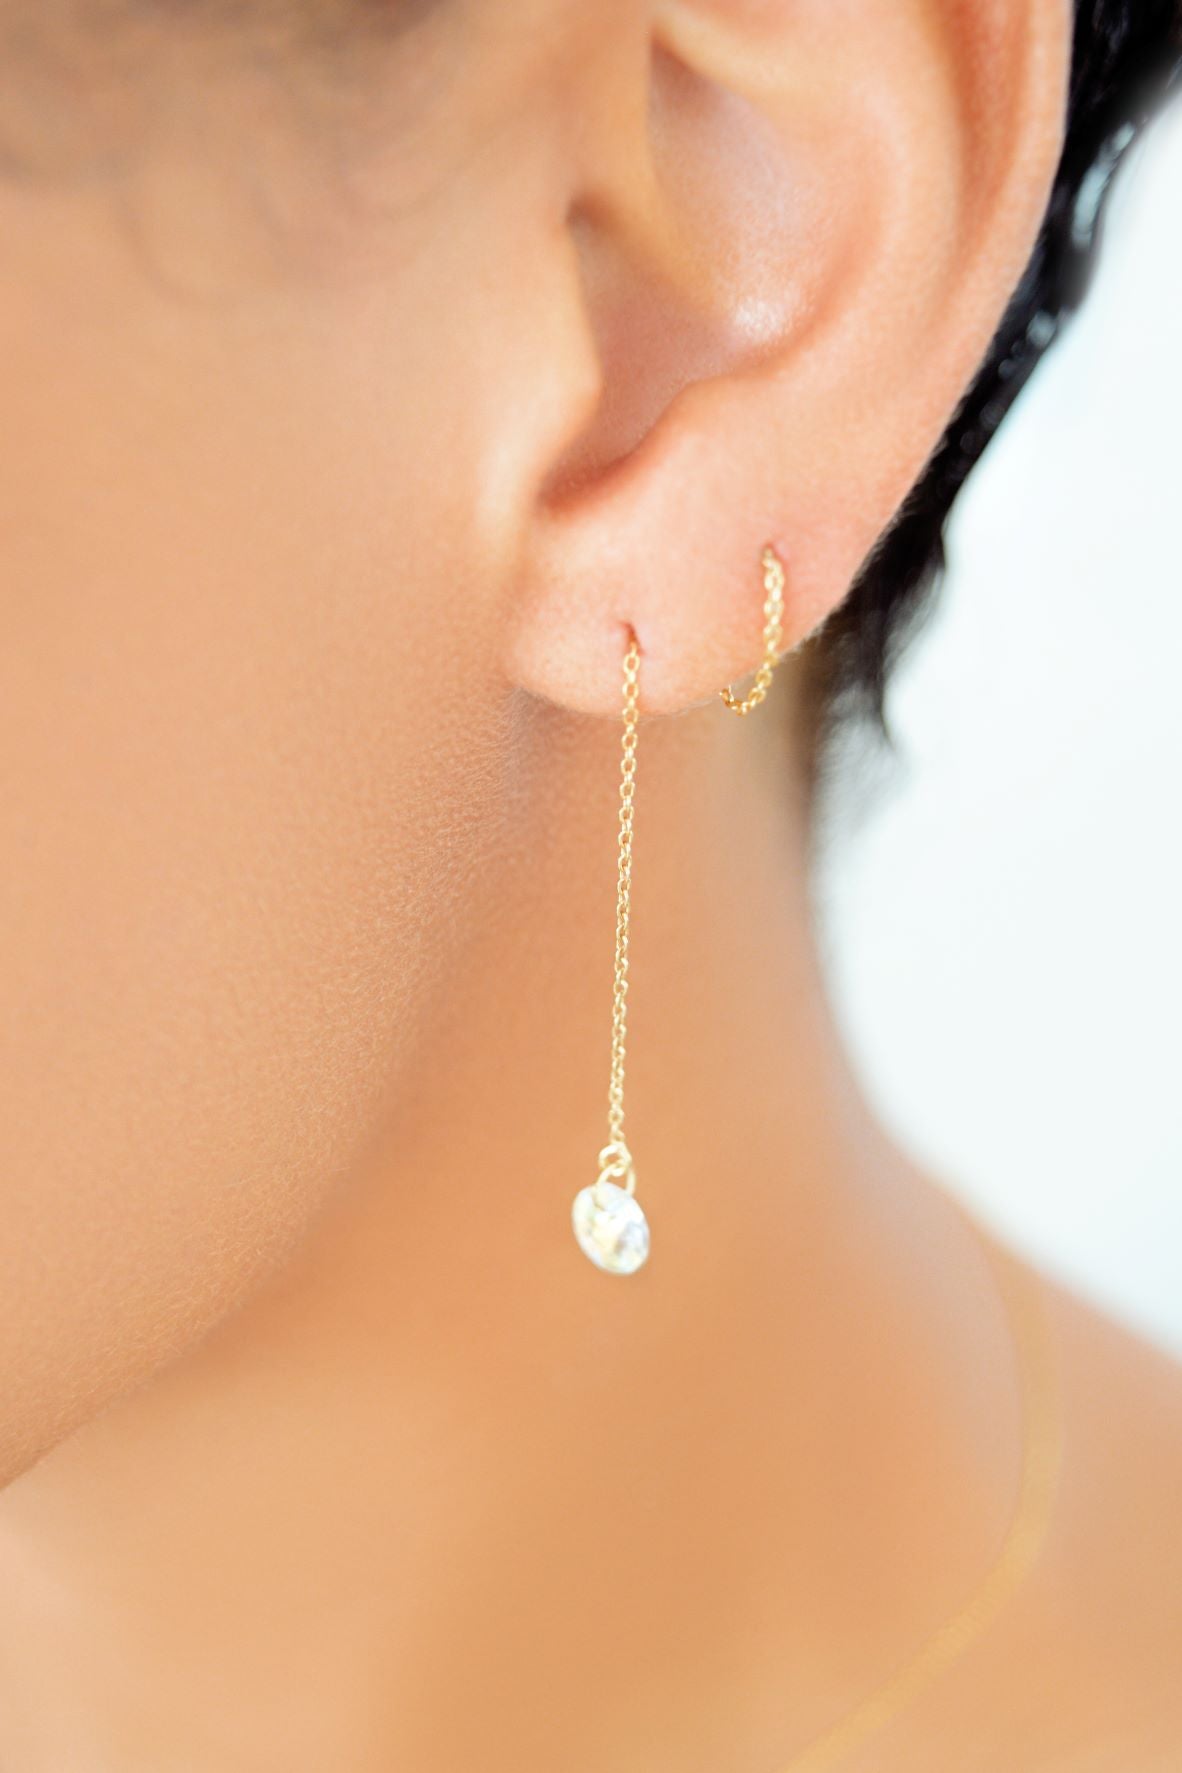 earrings long earrings earring silver earring gold plated earrings